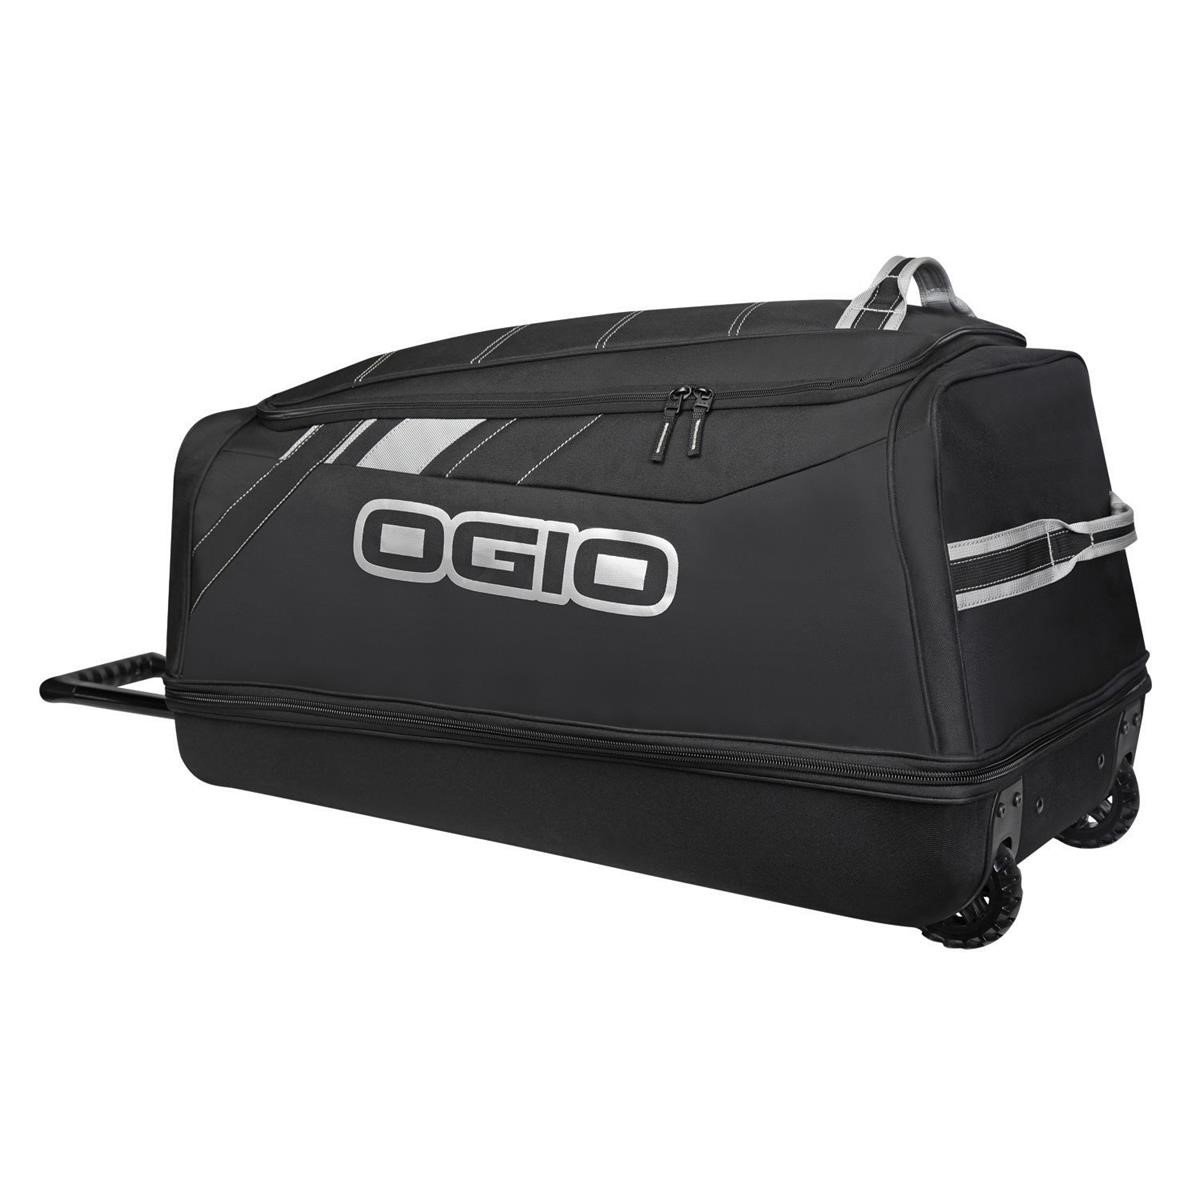 Ogio Reisetasche Shock Wheel Bag Stealth/Schwarz, 114 Liter